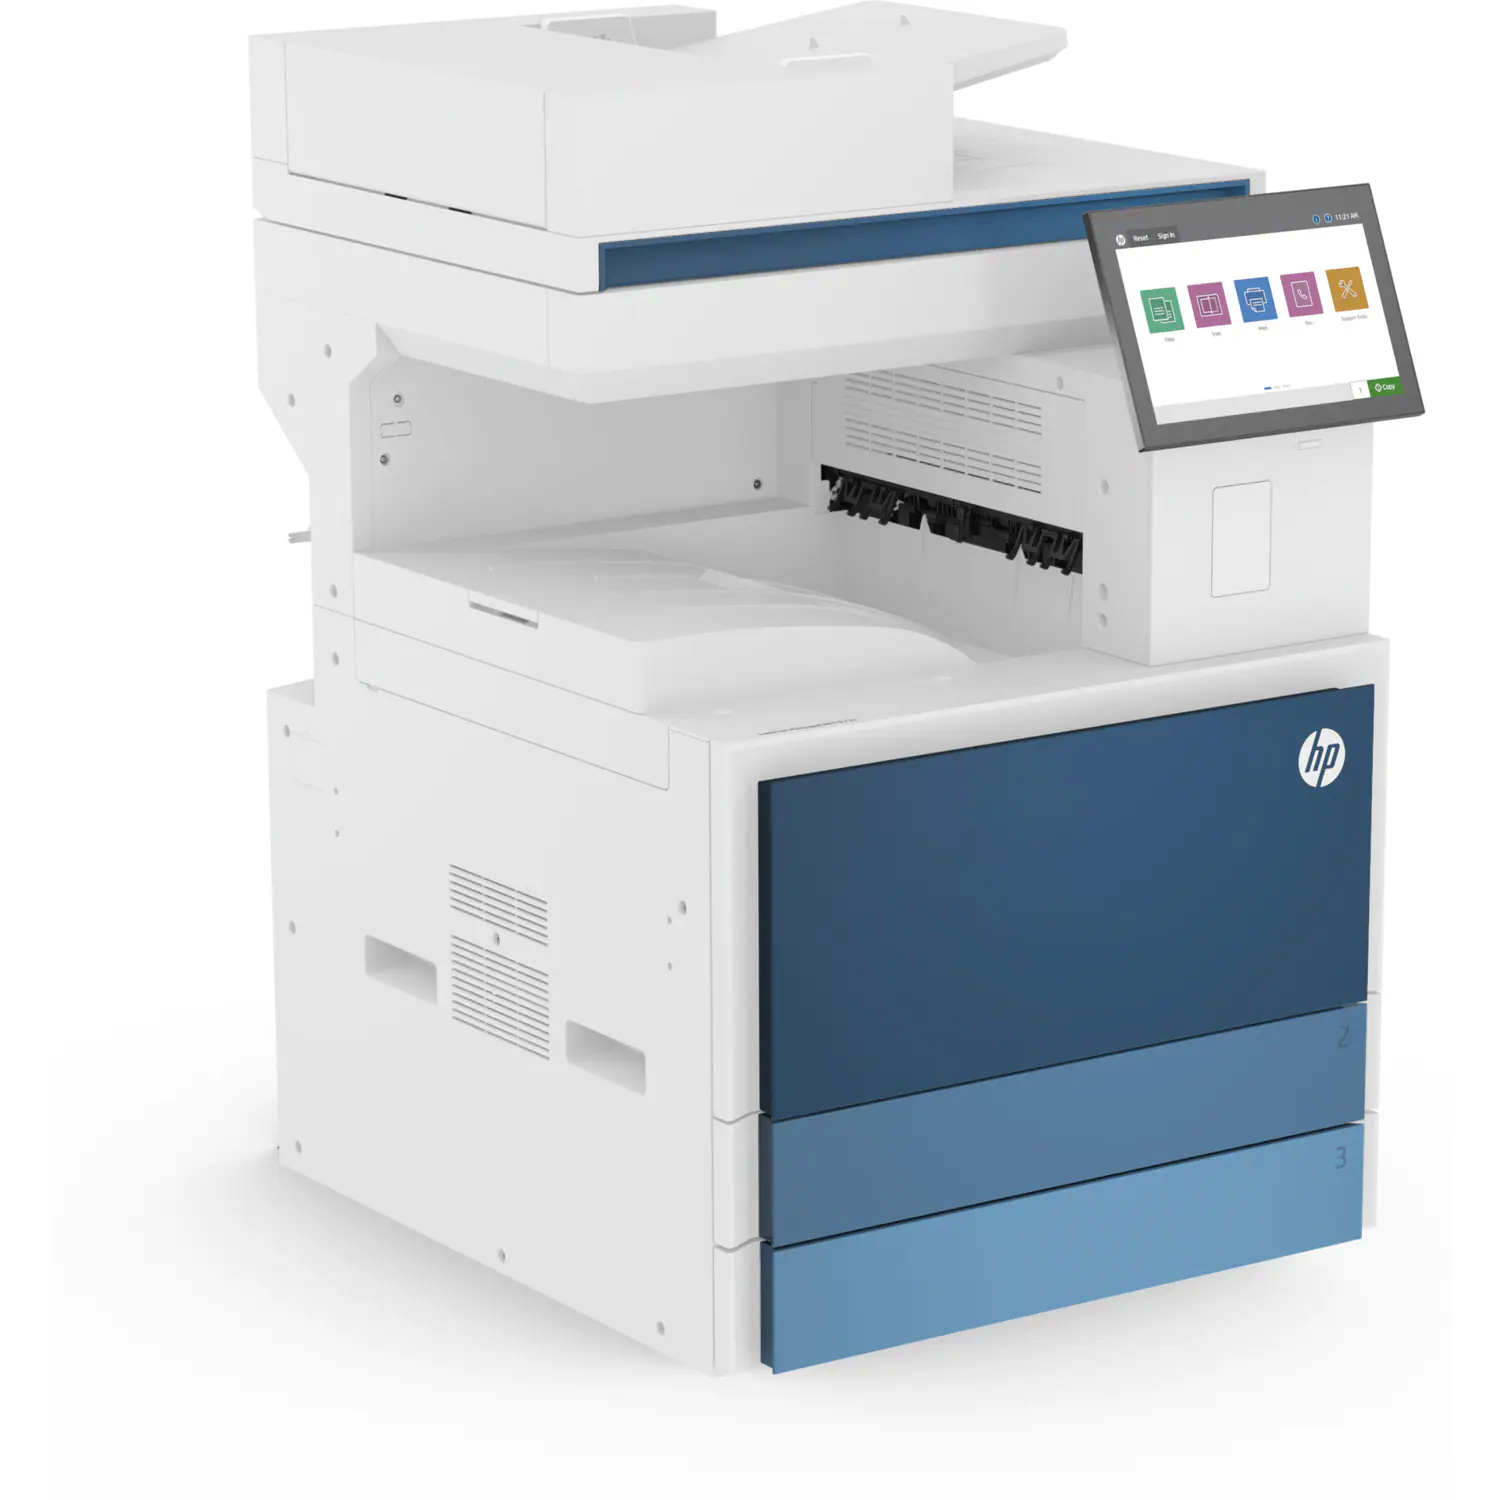 Máy Photocopy đen trắng đa chức năng HP LaserJet Managed MFP E826DN - 5QK09A + 8EP64AAE (70 trang/1 phút)